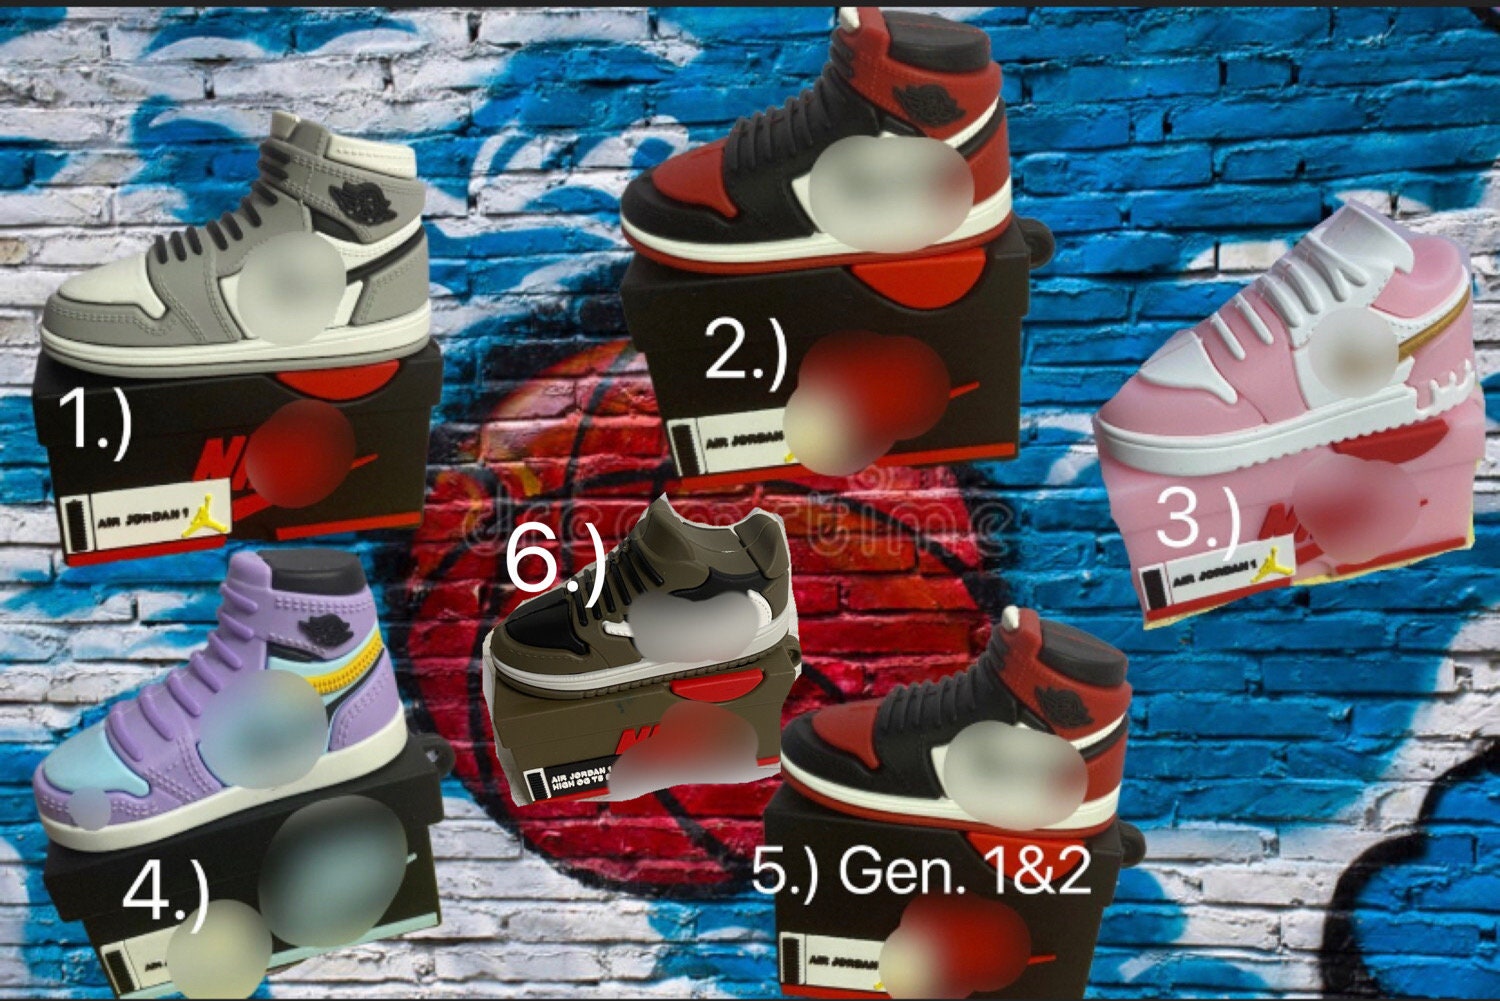 Air Jordan 1 Sneaker Airpods Case – Trend Sellers